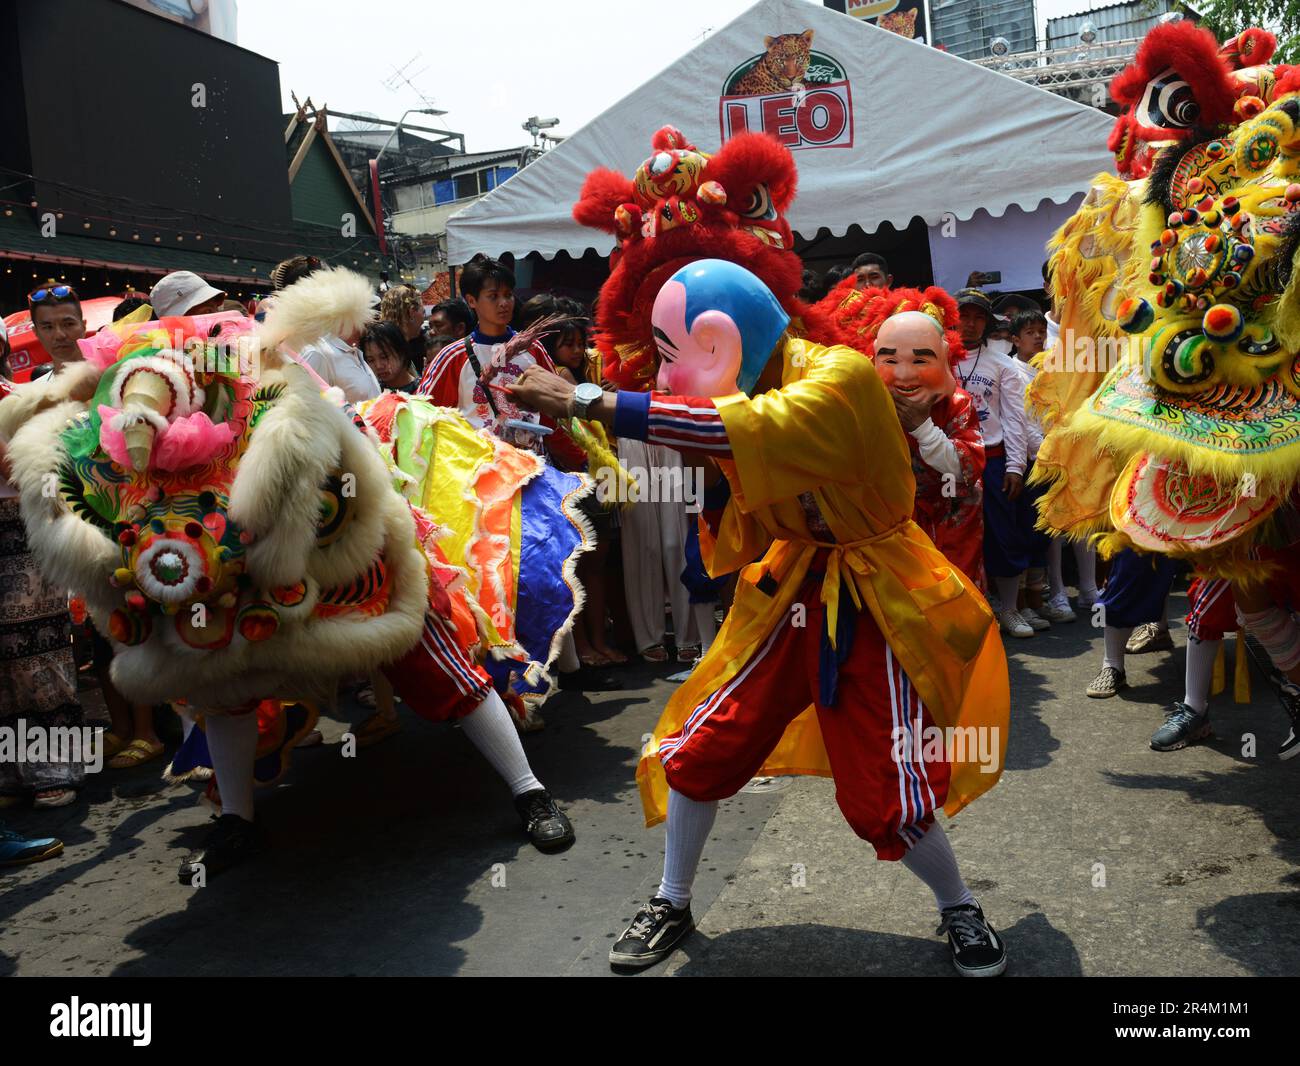 Eine farbenfrohe kulturelle Show von Dragons, Jow GA Lion und bunten Figuren während der Feierlichkeiten des Songkran Festivals. Khaosan Road, Bangkok, Thailand. Stockfoto